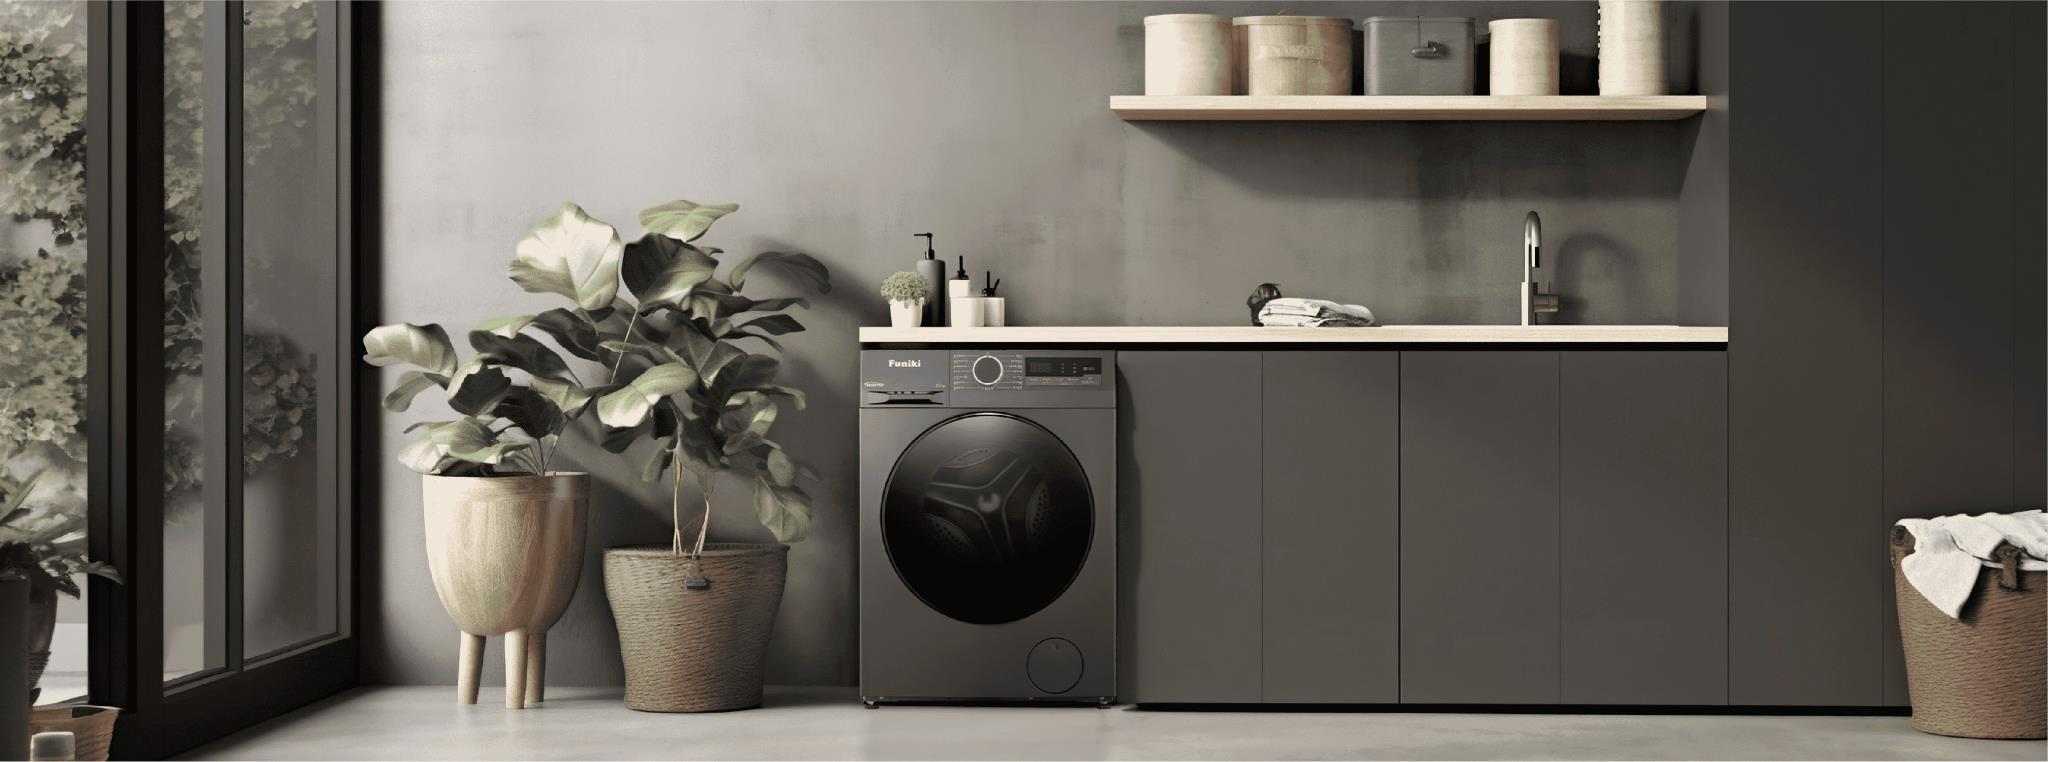 Tổng quan về thiết kế máy giặt Funiki